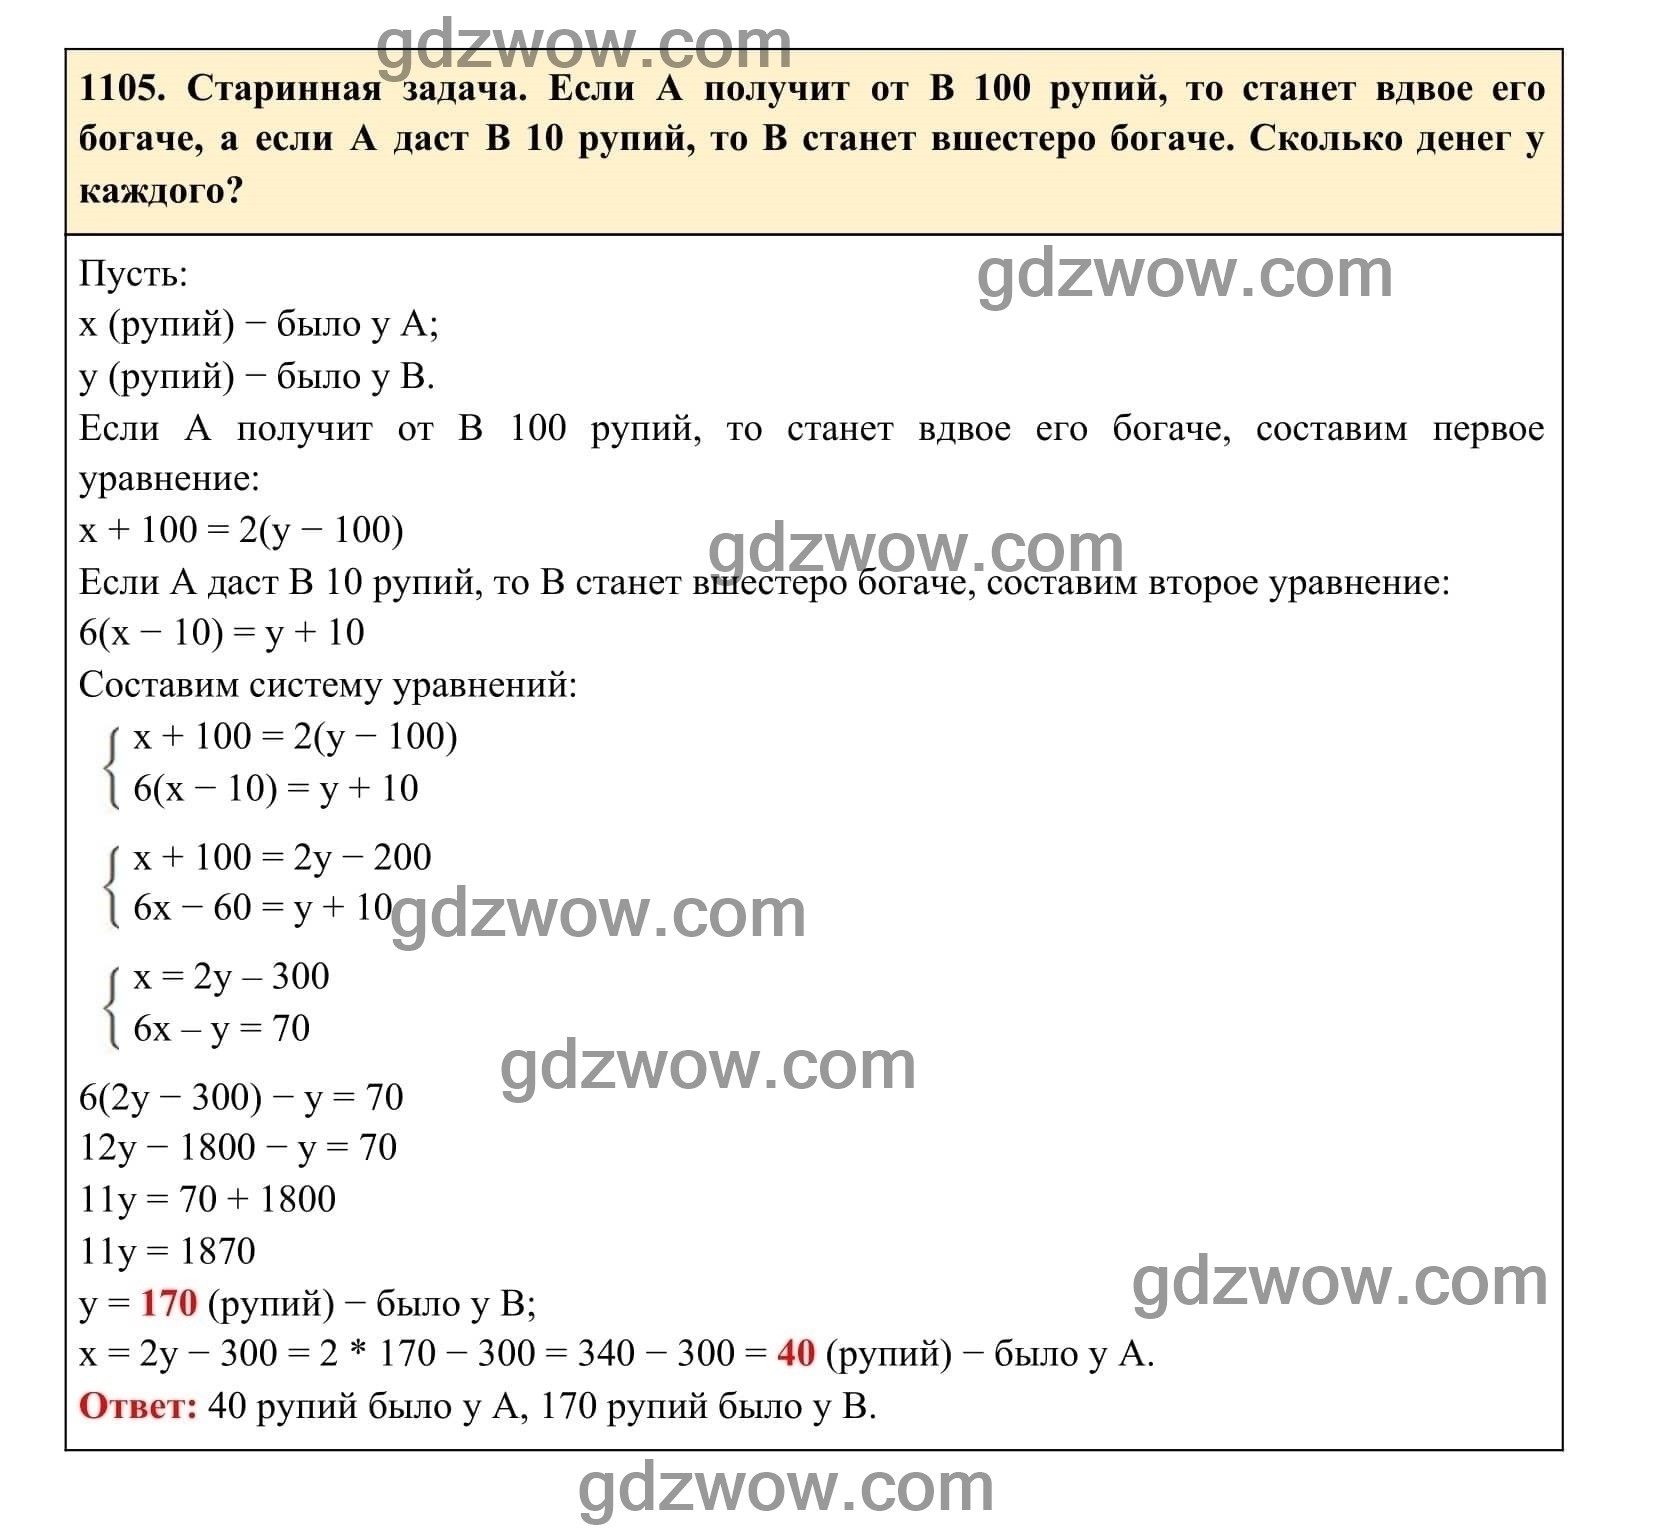 Упражнение 1105 - ГДЗ по Алгебре 7 класс Учебник Макарычев (решебник) - GDZwow